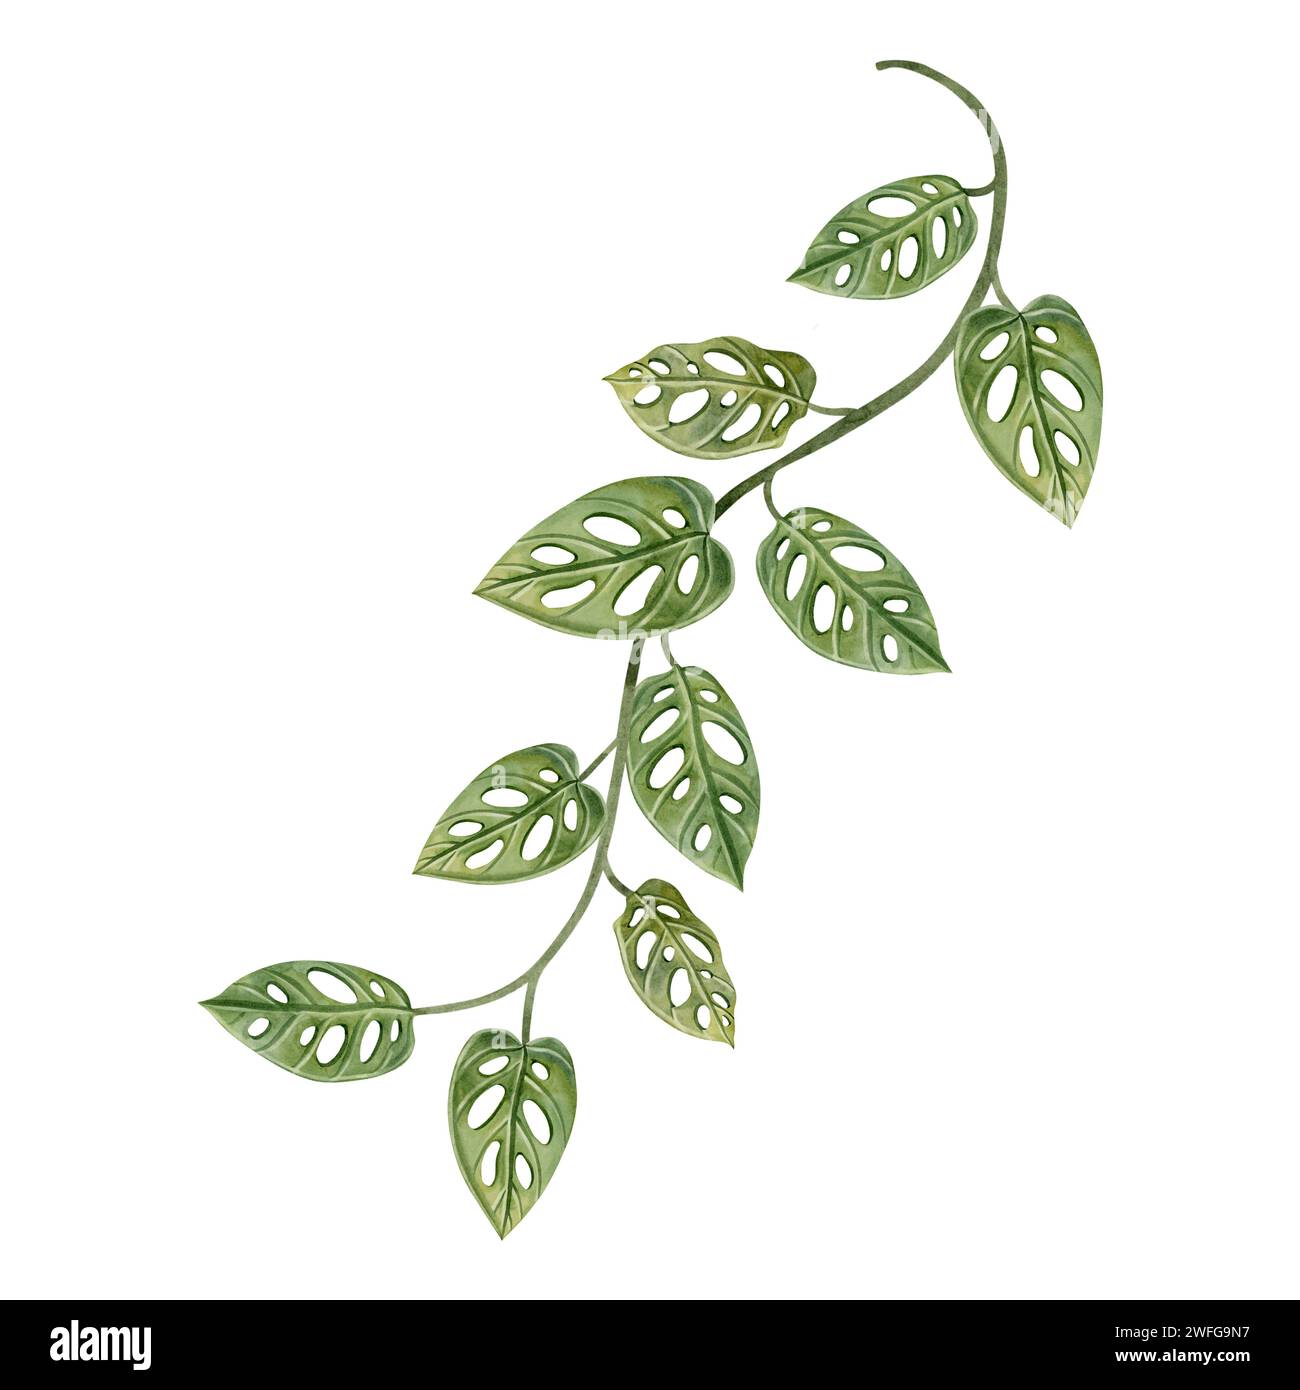 Illustration d'aquarelle de vigne Monstera obliqua. Masque de singe jungle plante de liana pour les dessins tropicaux de forêt tropicale Banque D'Images